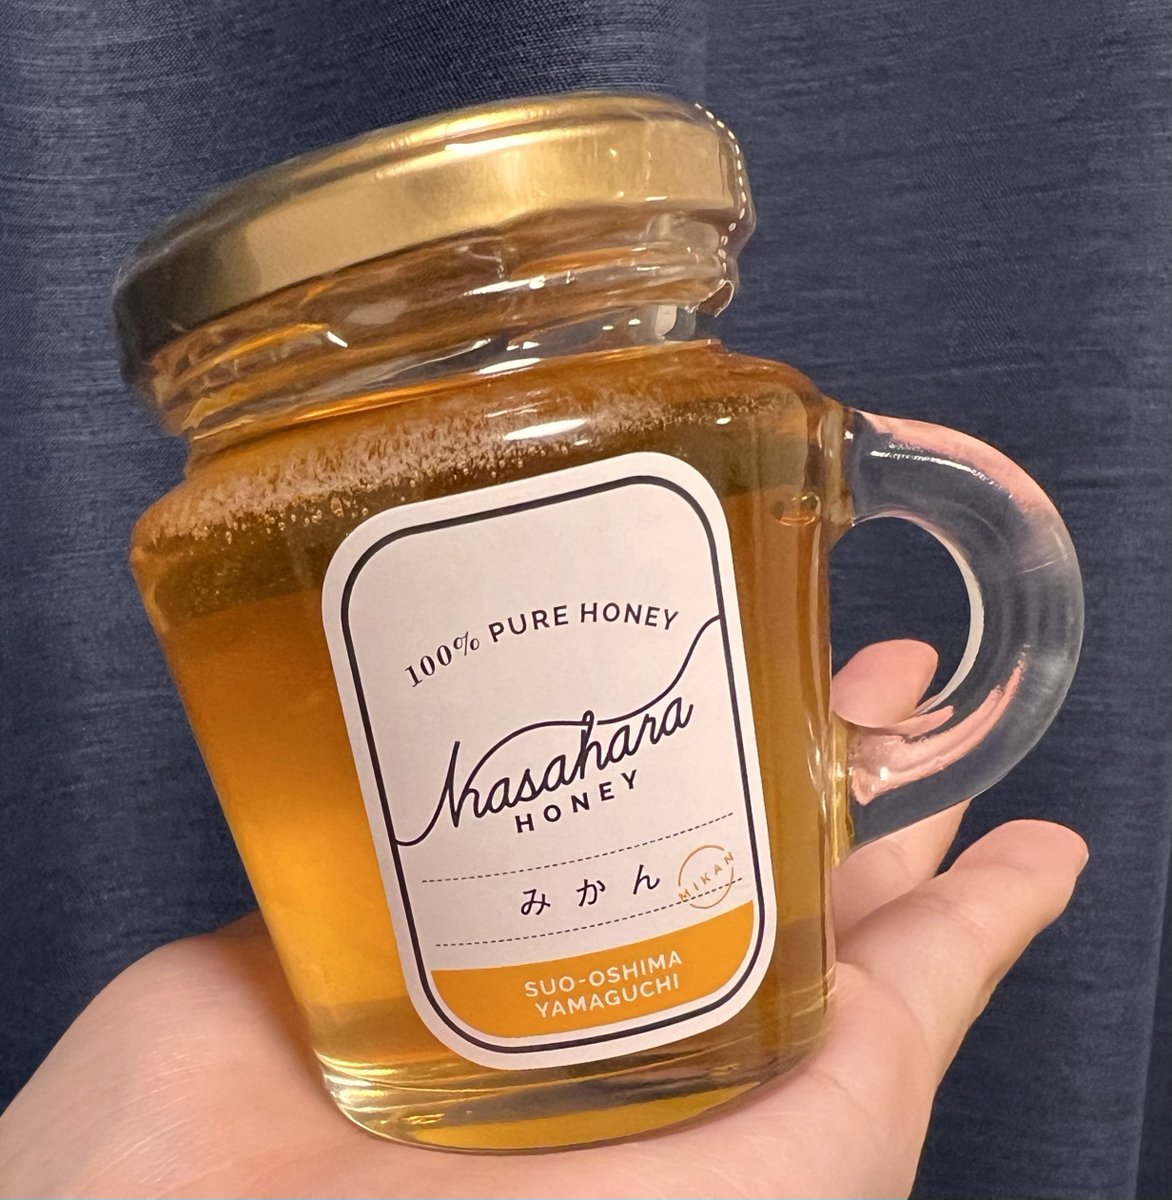 トムブラウンのANNP聴いてたら周防大島の蜂蜜屋さんの話が出てきて、そういえば気になってたのに買えてなかったことを思い出したので購入。
みかんハチミツ楽しみ🍊🍯
 #KASAHARAHONEY